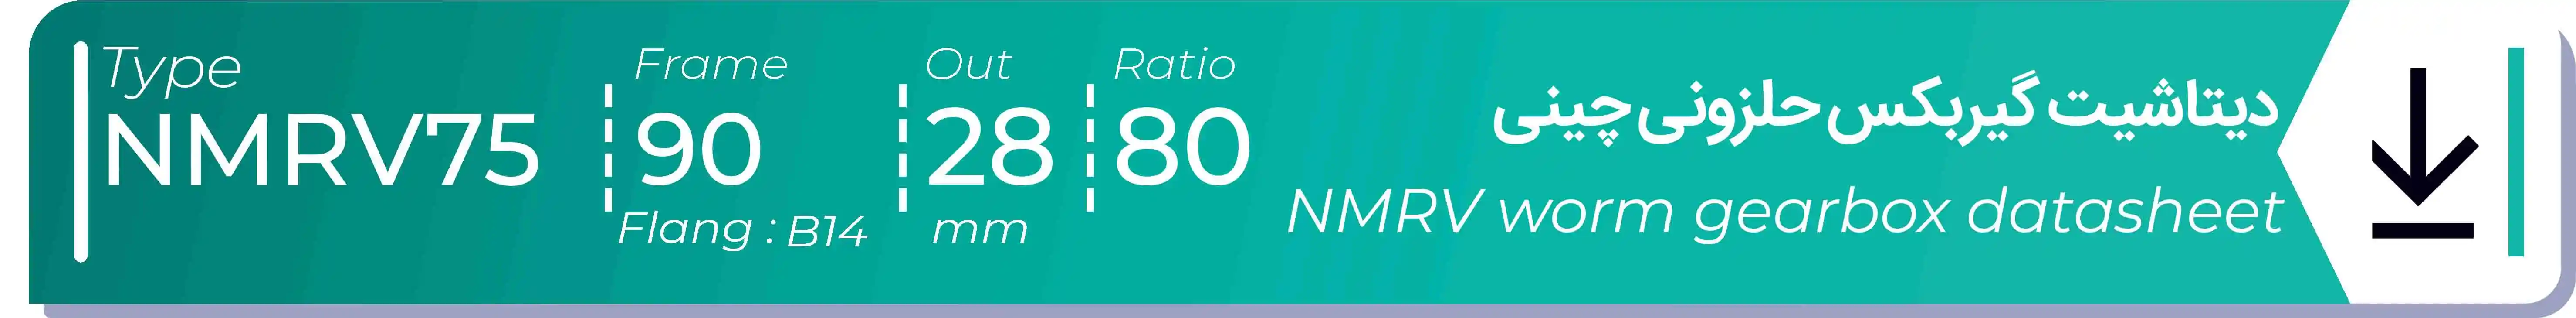  دیتاشیت و مشخصات فنی گیربکس حلزونی چینی   NMRV75  -  با خروجی 28- میلی متر و نسبت80 و فریم 90